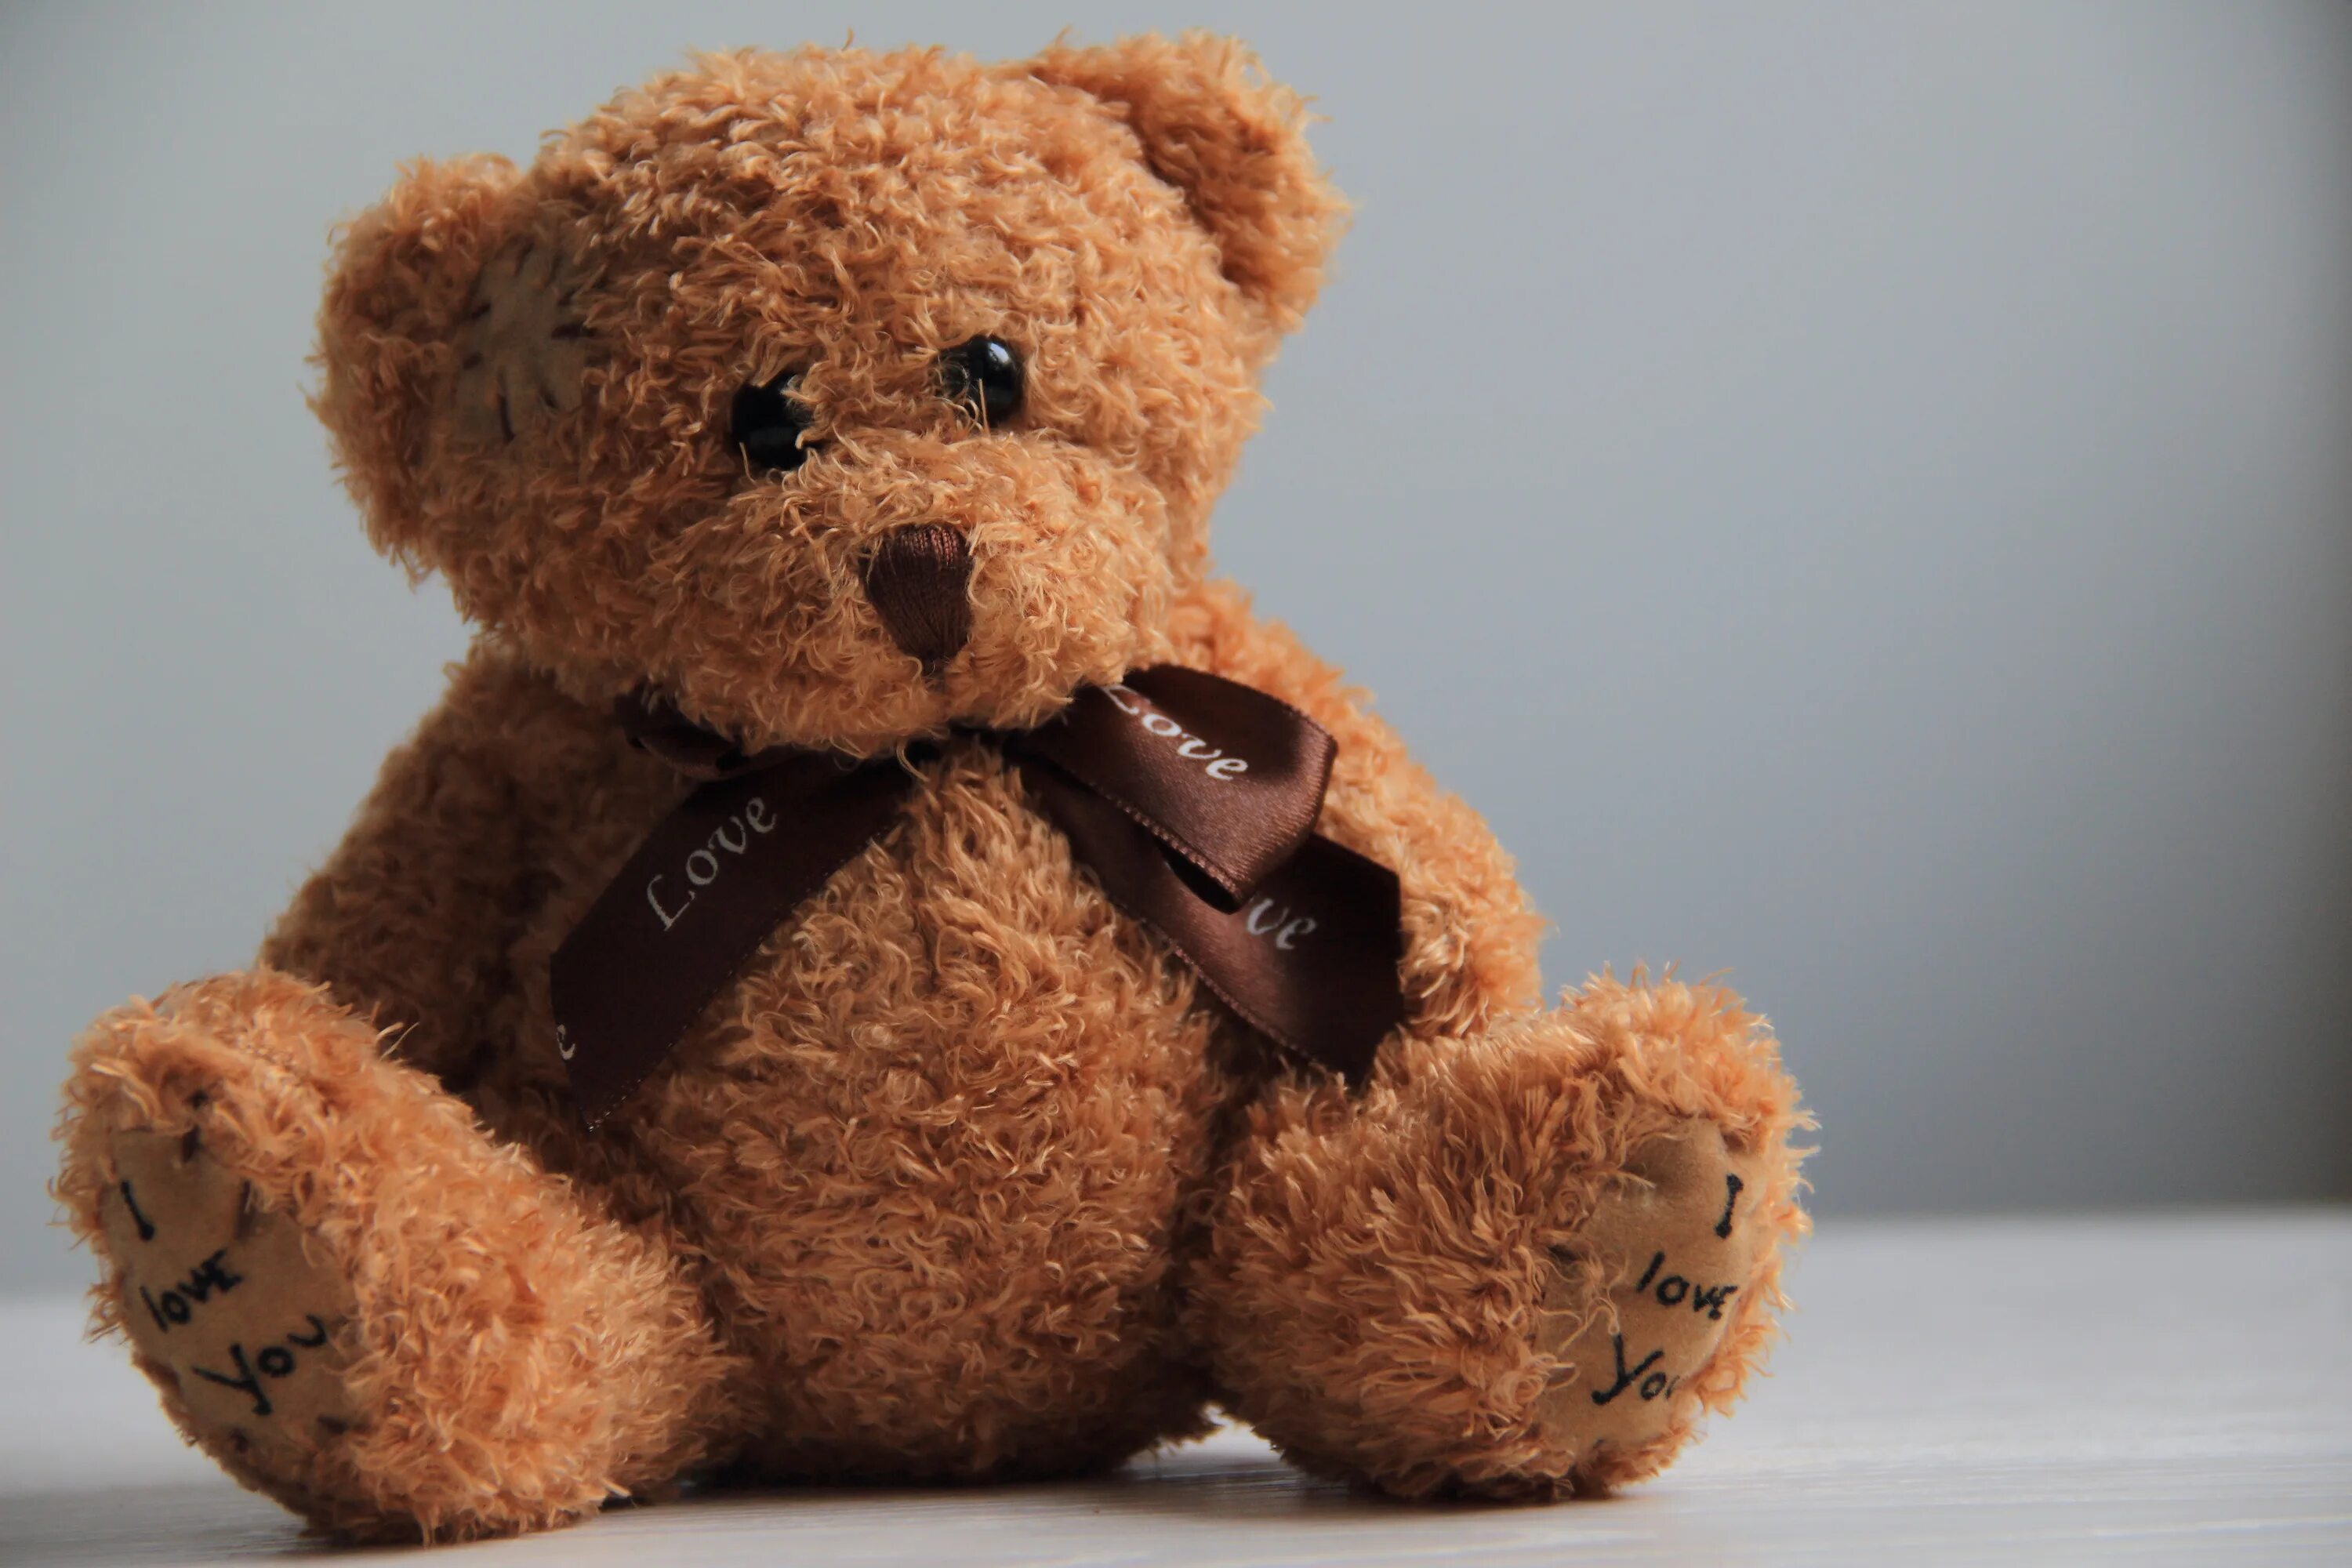 A brown teddy bear. Тедди Беар. Медвежонок Тедди Беар. Тедди Беар игрушка. Плюшевый мишка коричневый.